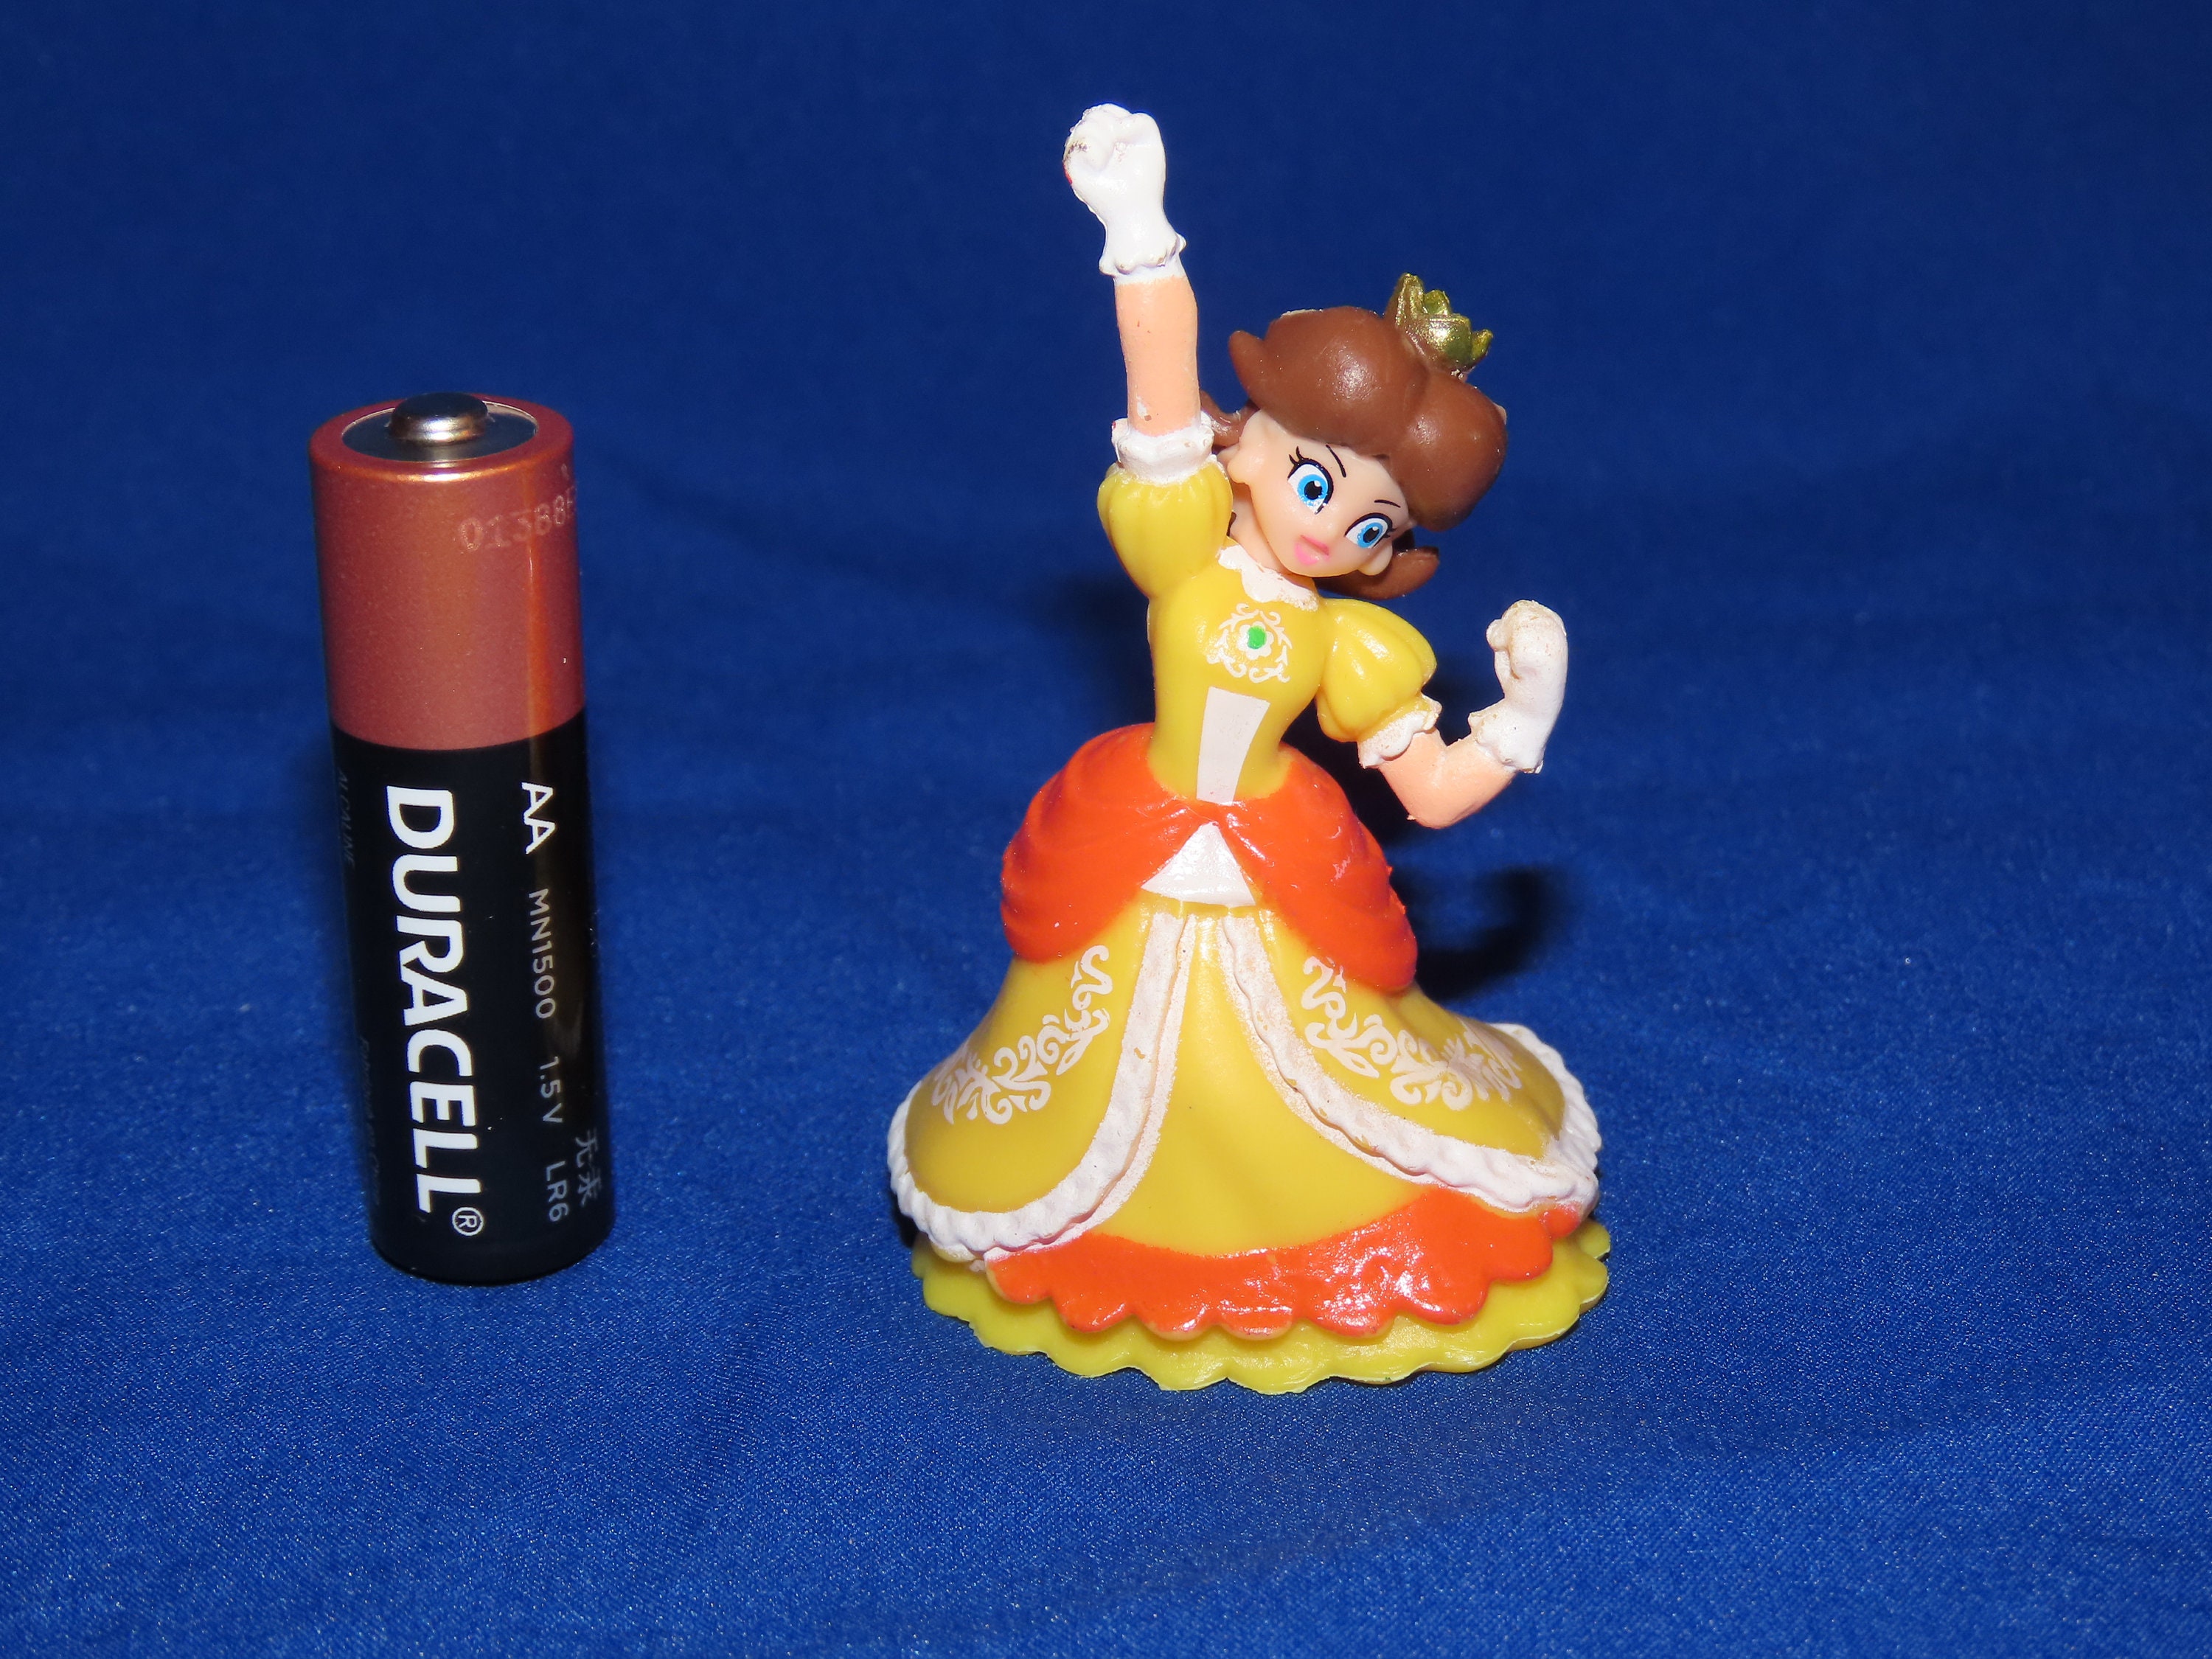 Princess Daisy mario Series Figurine 